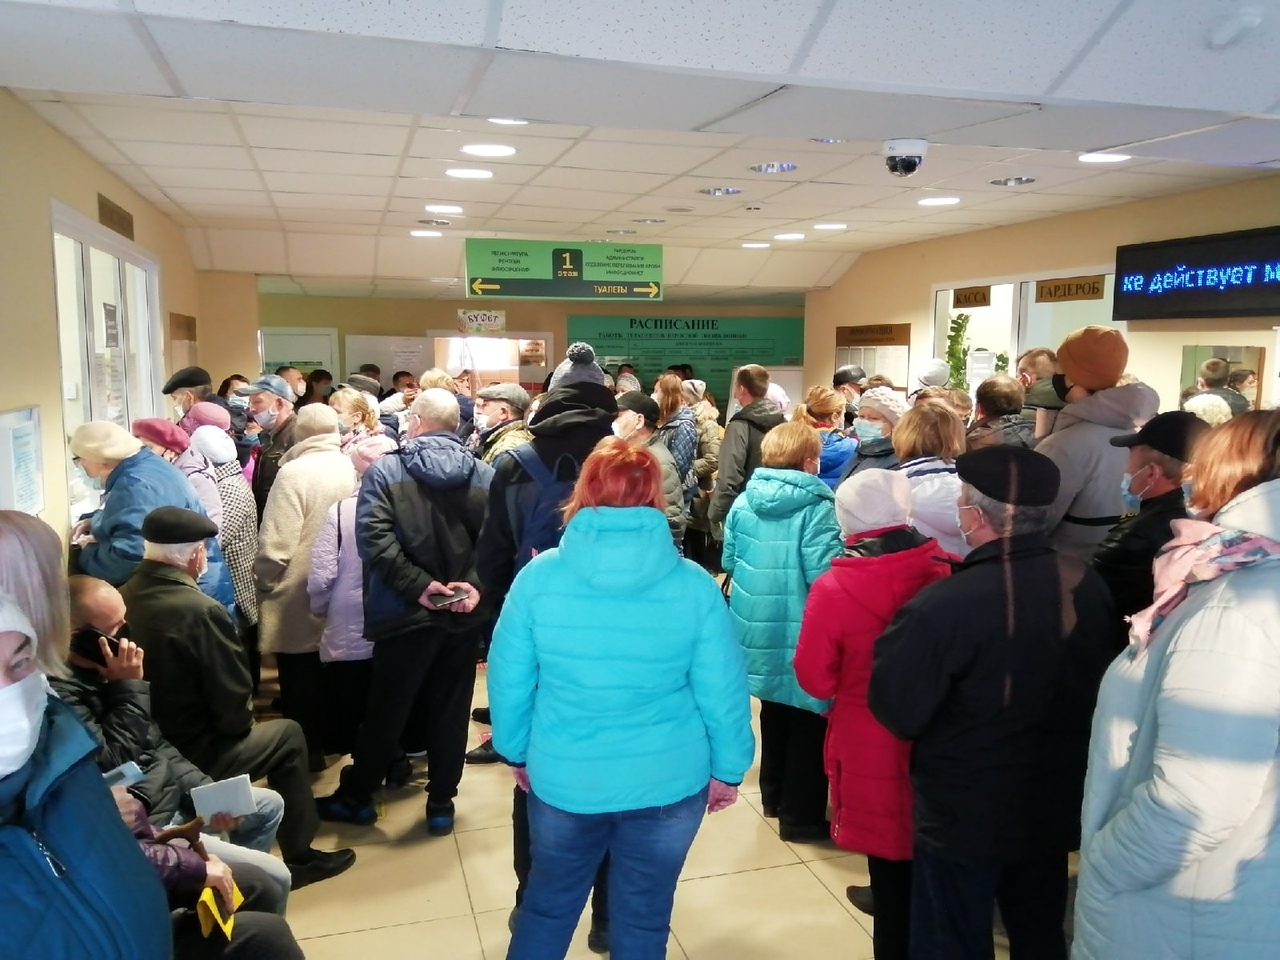 "Тут и маска не поможет": ярославцы жалуются на тесную очередь в поликлинику